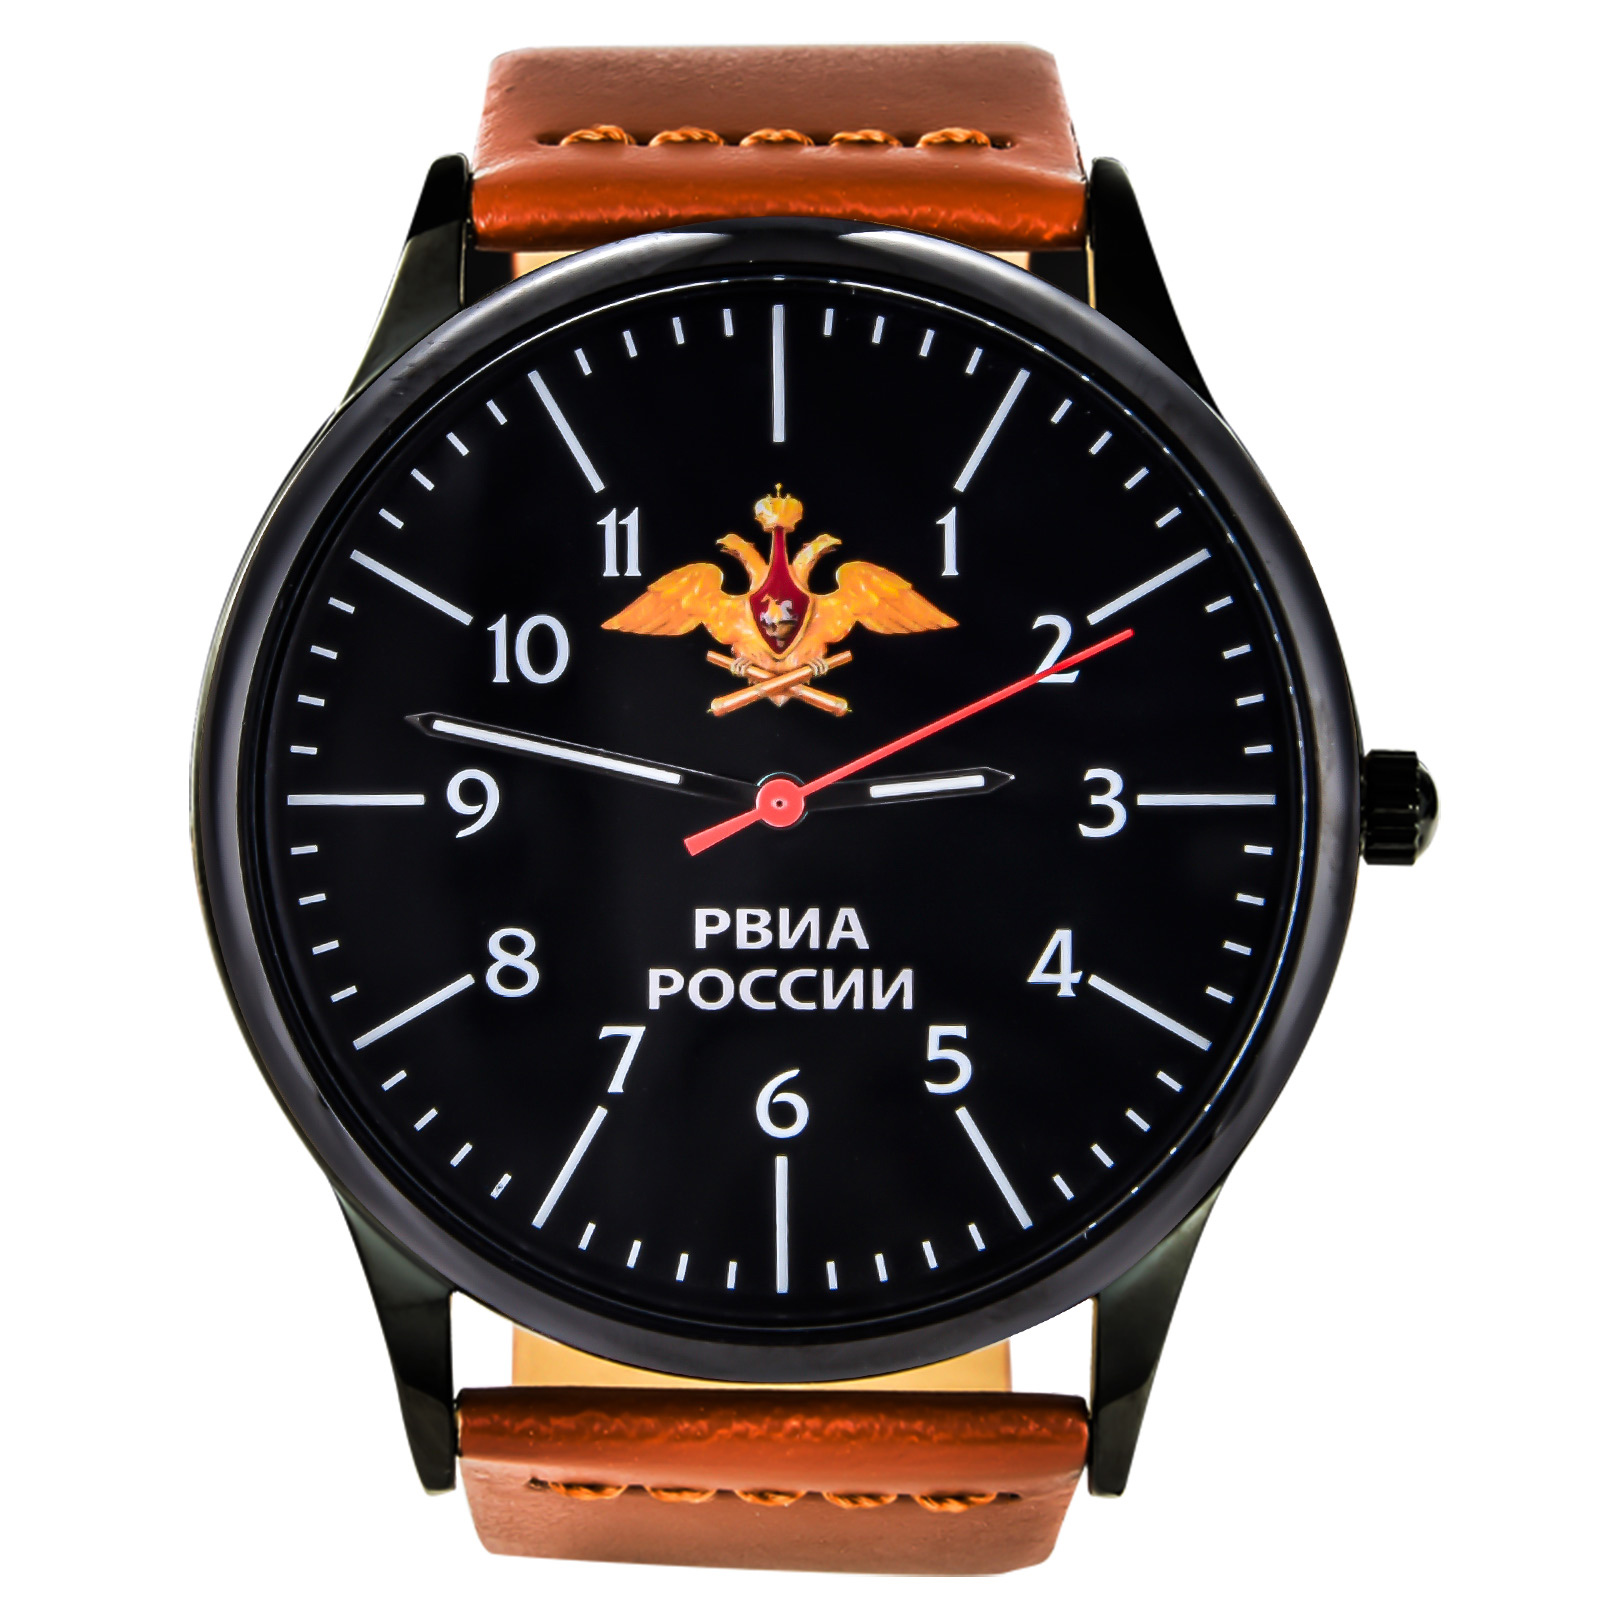 Армейские командирские часы РВиА 